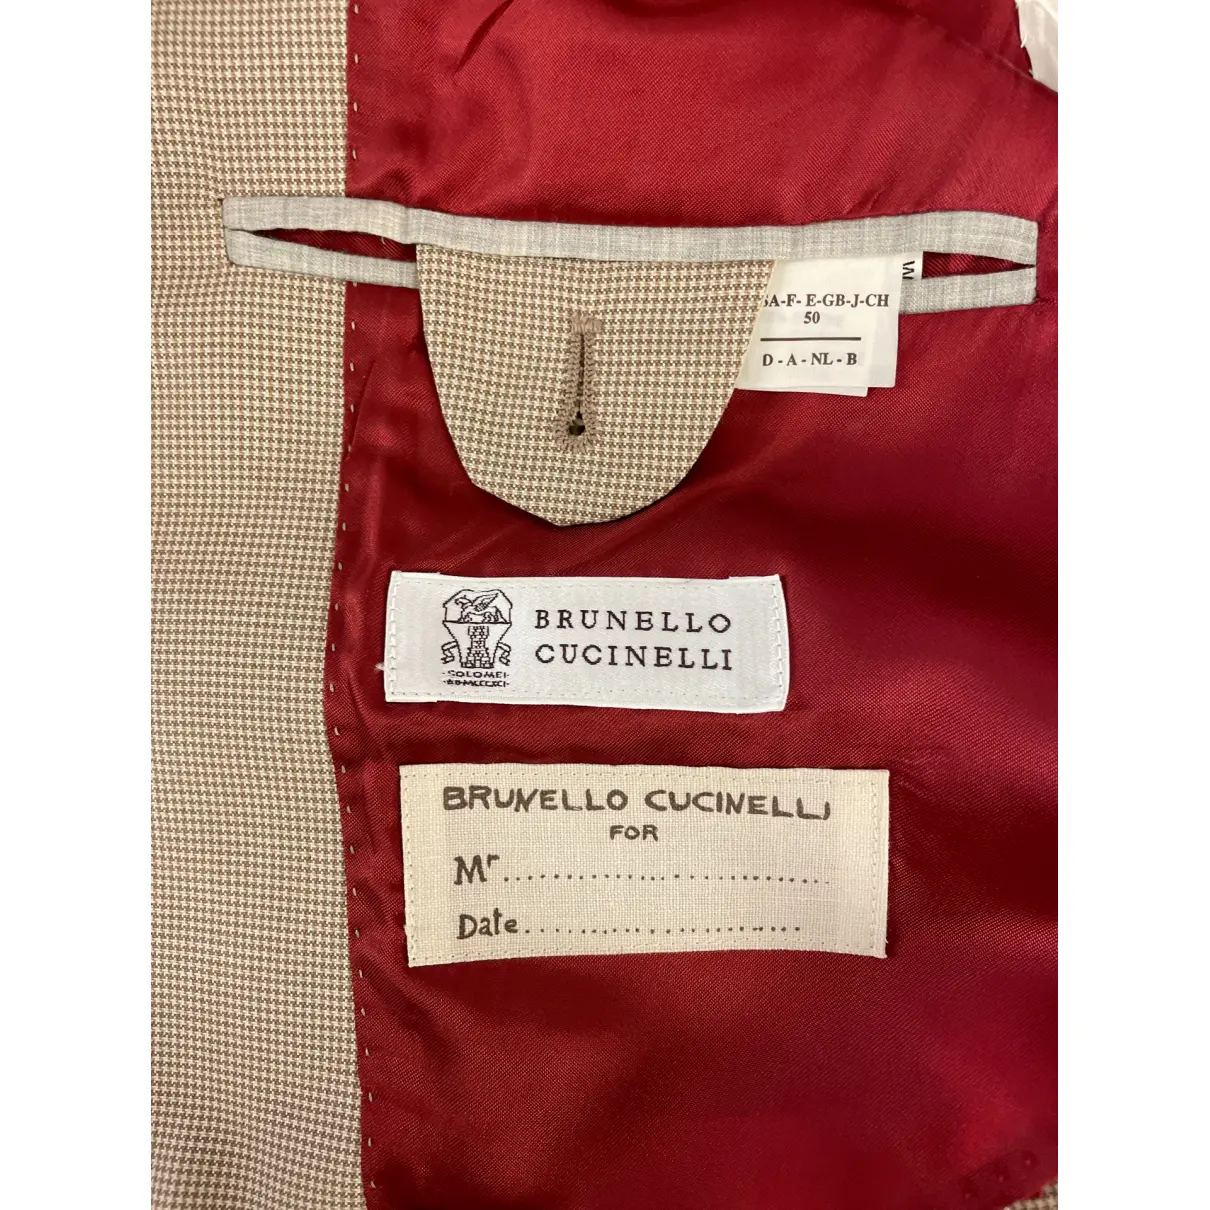 Suit Brunello Cucinelli